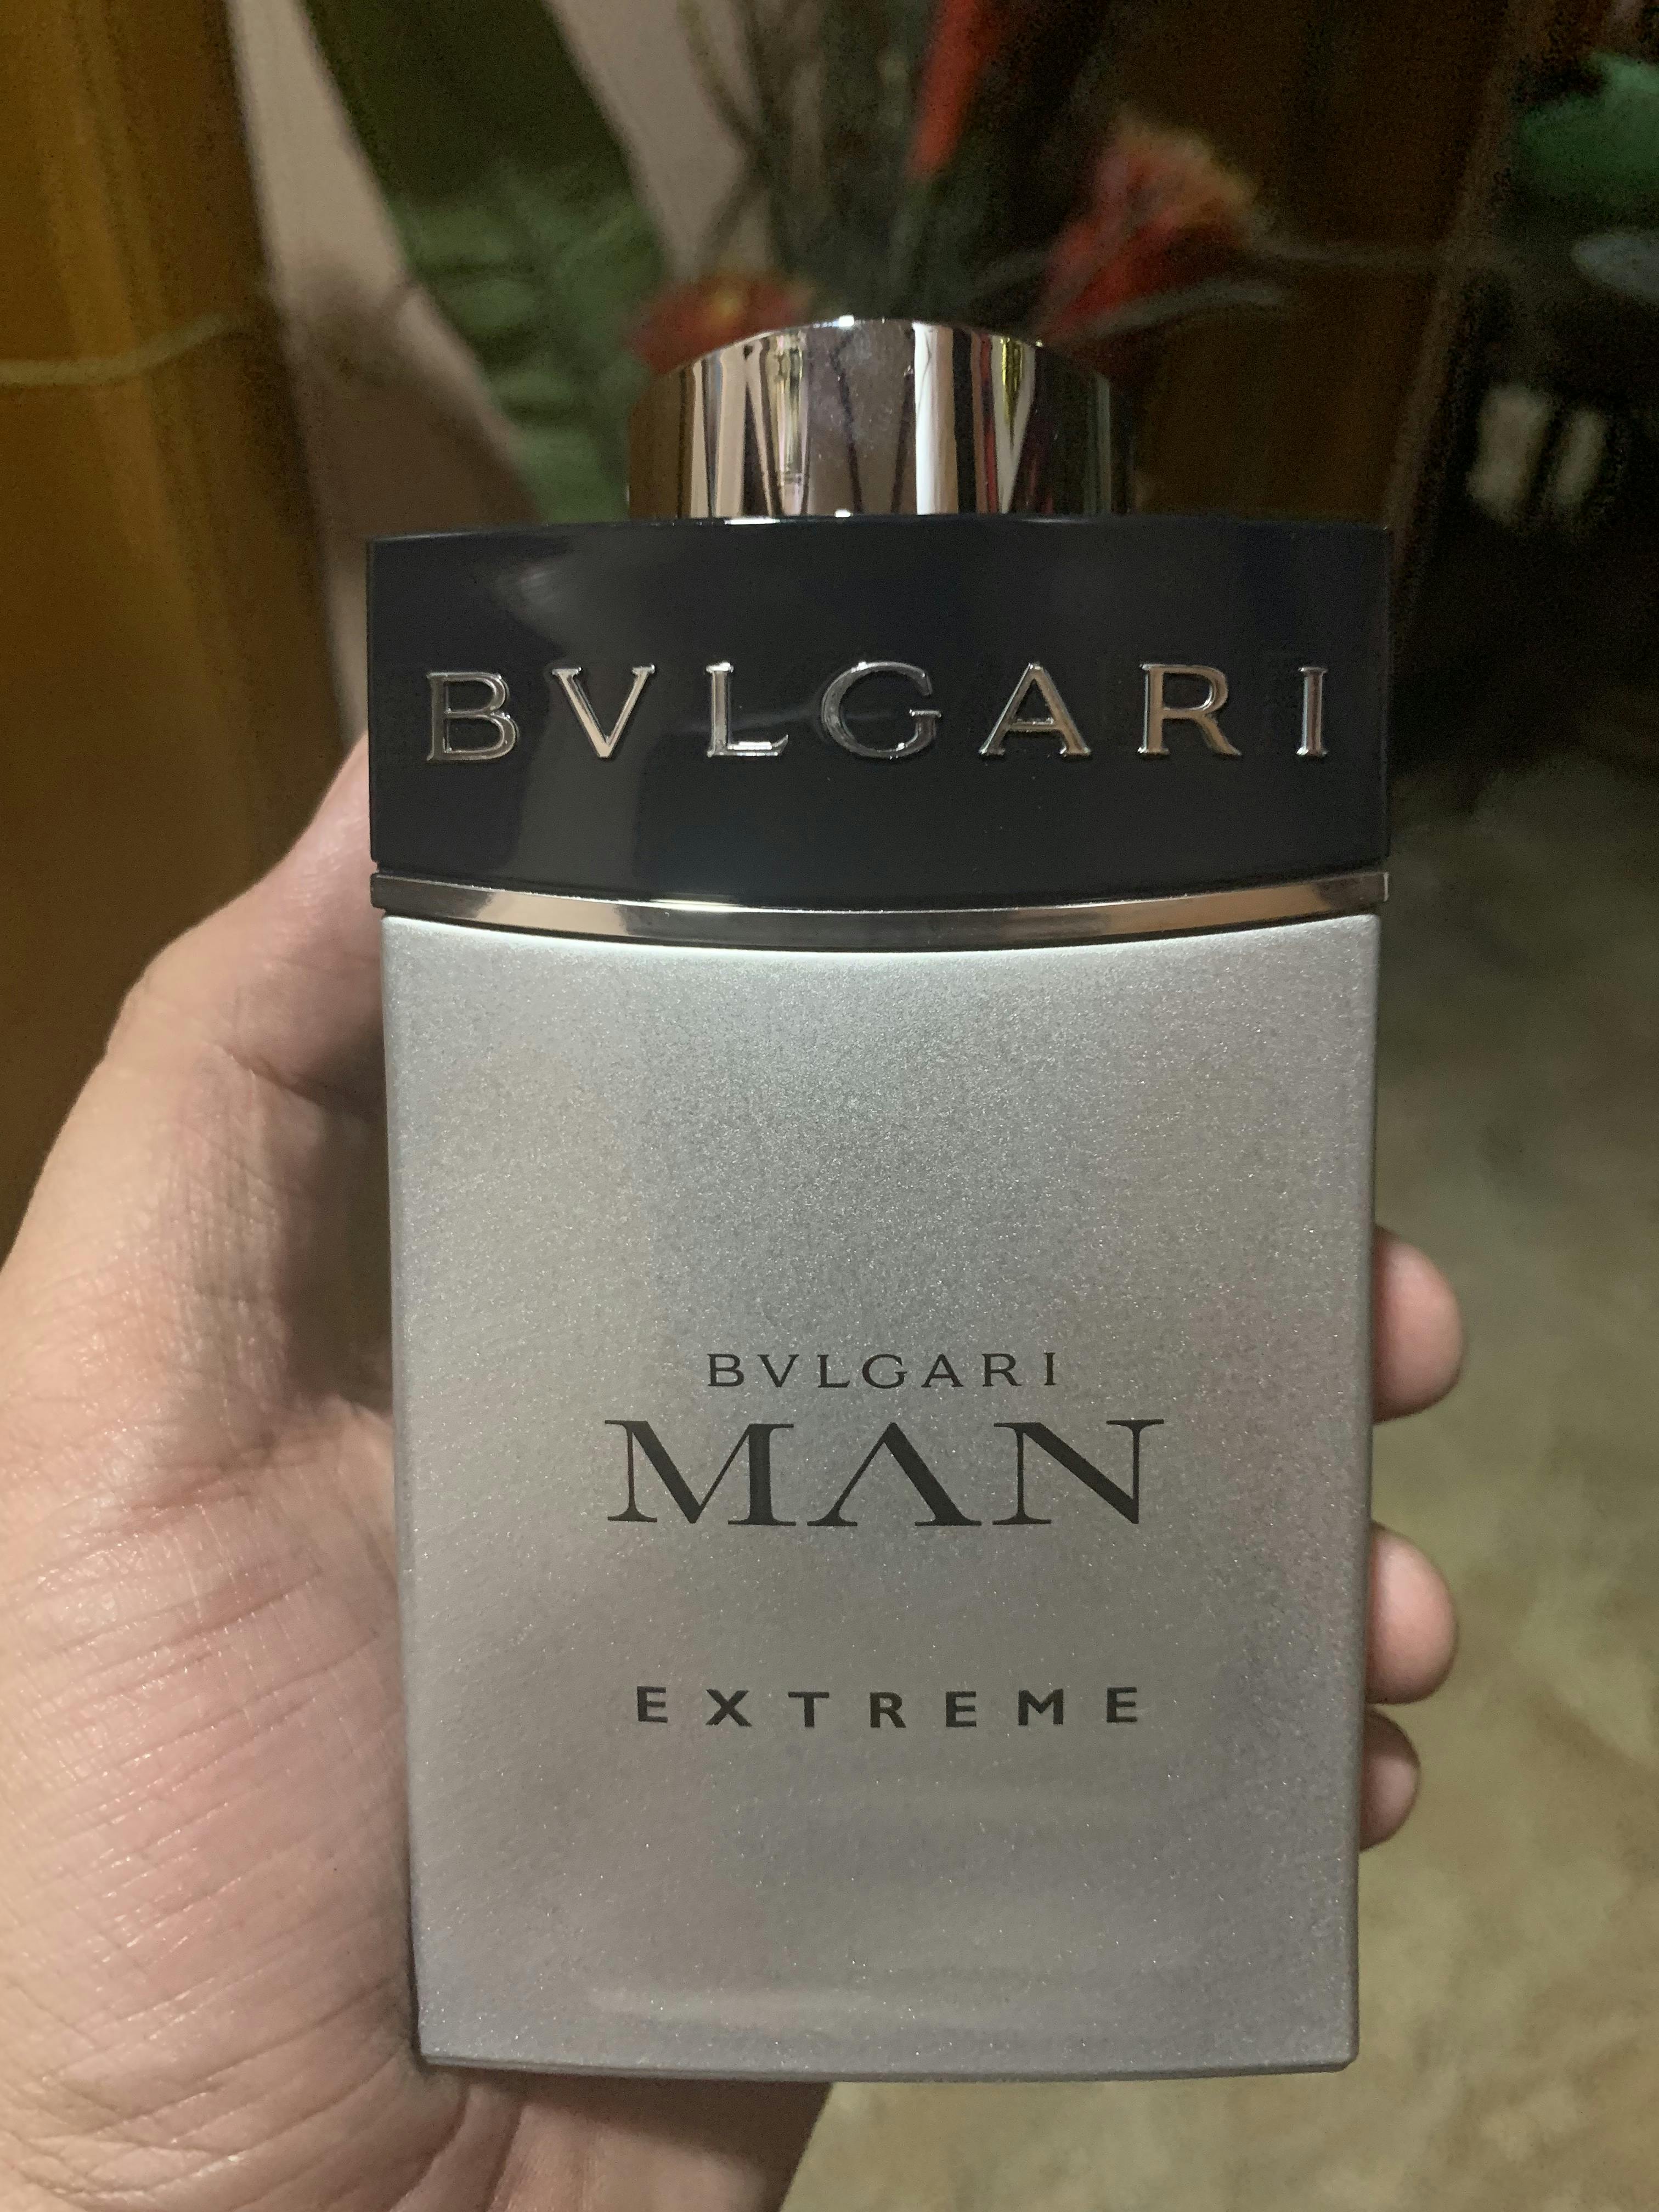 bvlgari man extreme price philippines